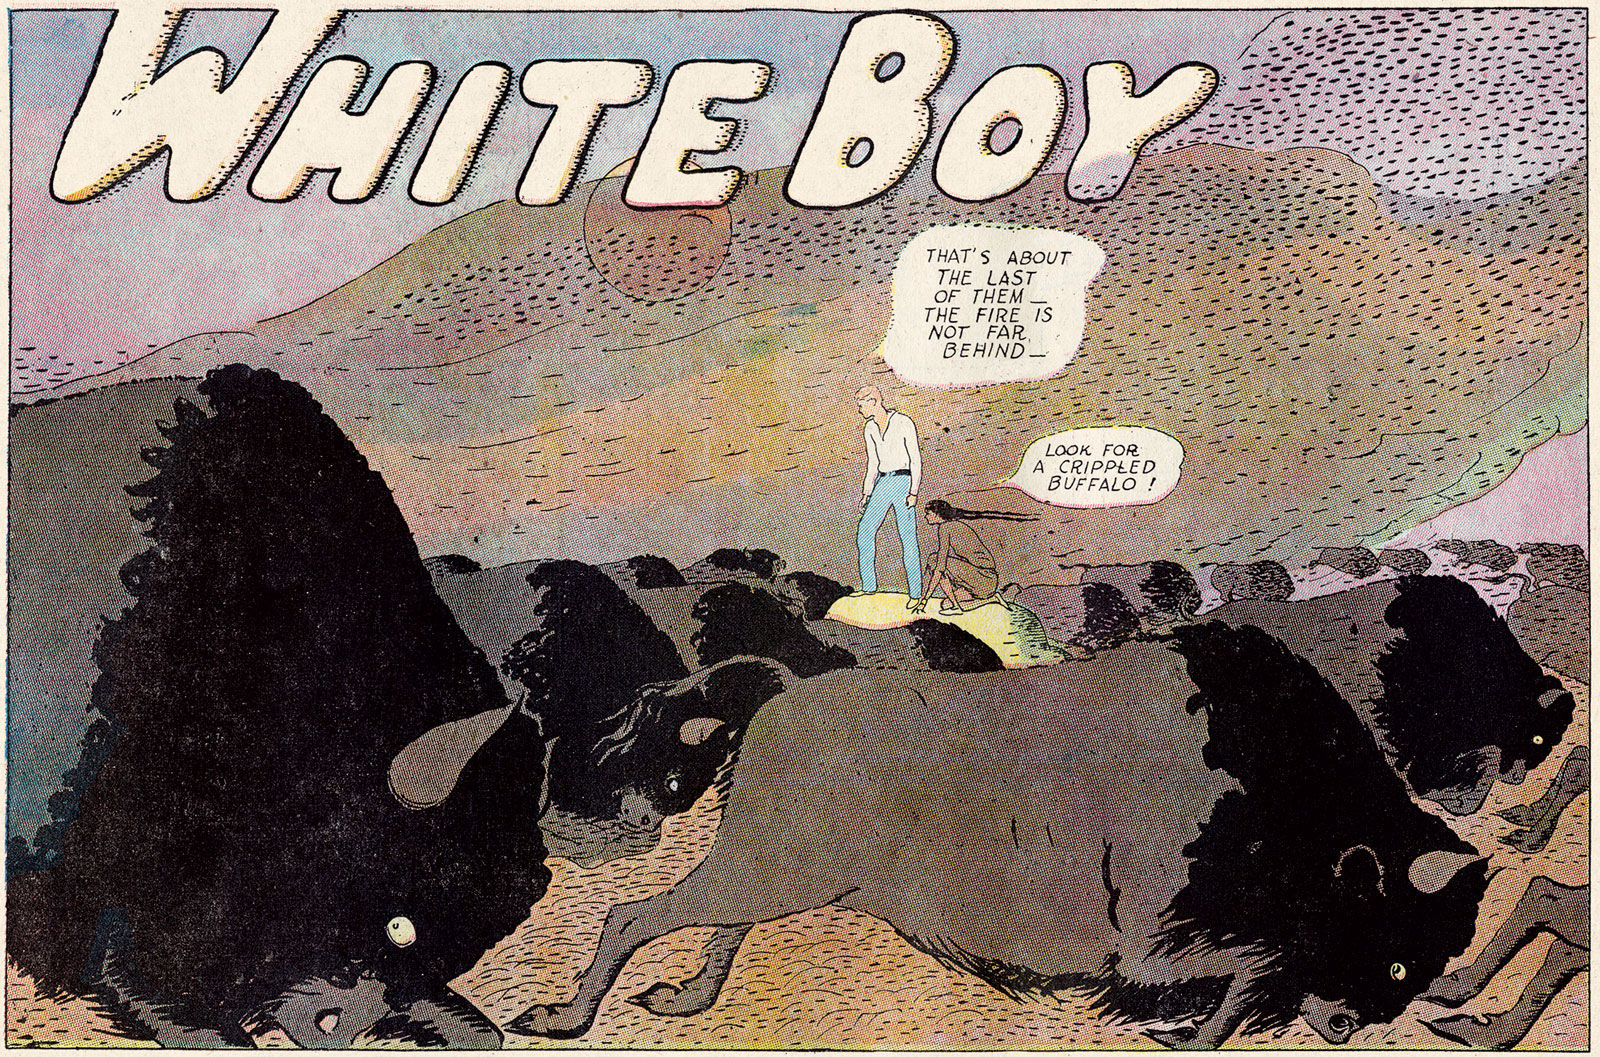 A frame from Garrett Price's White Boy, November 5, 1933